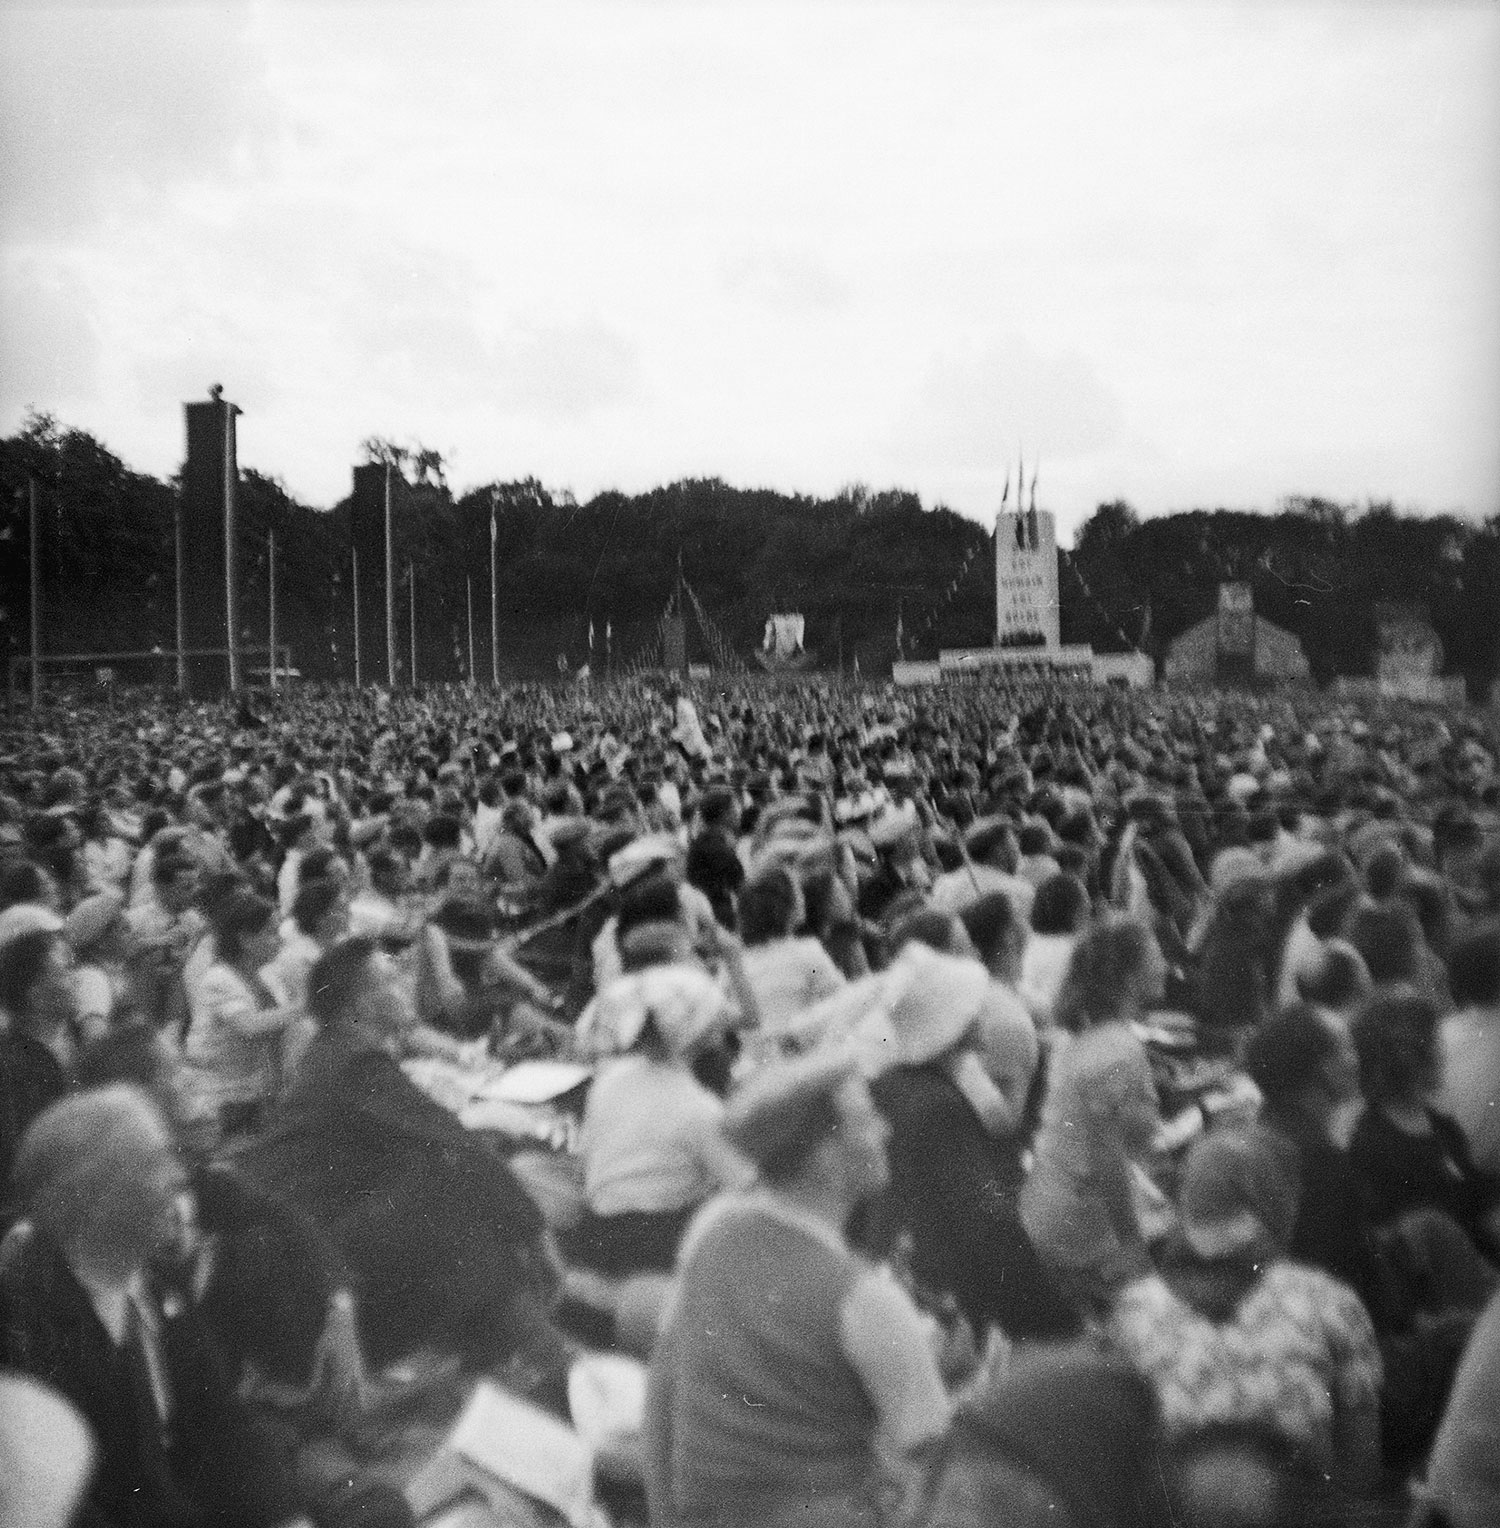 La foule et, à l'arrière-plan, le stand du Secours Populaire.